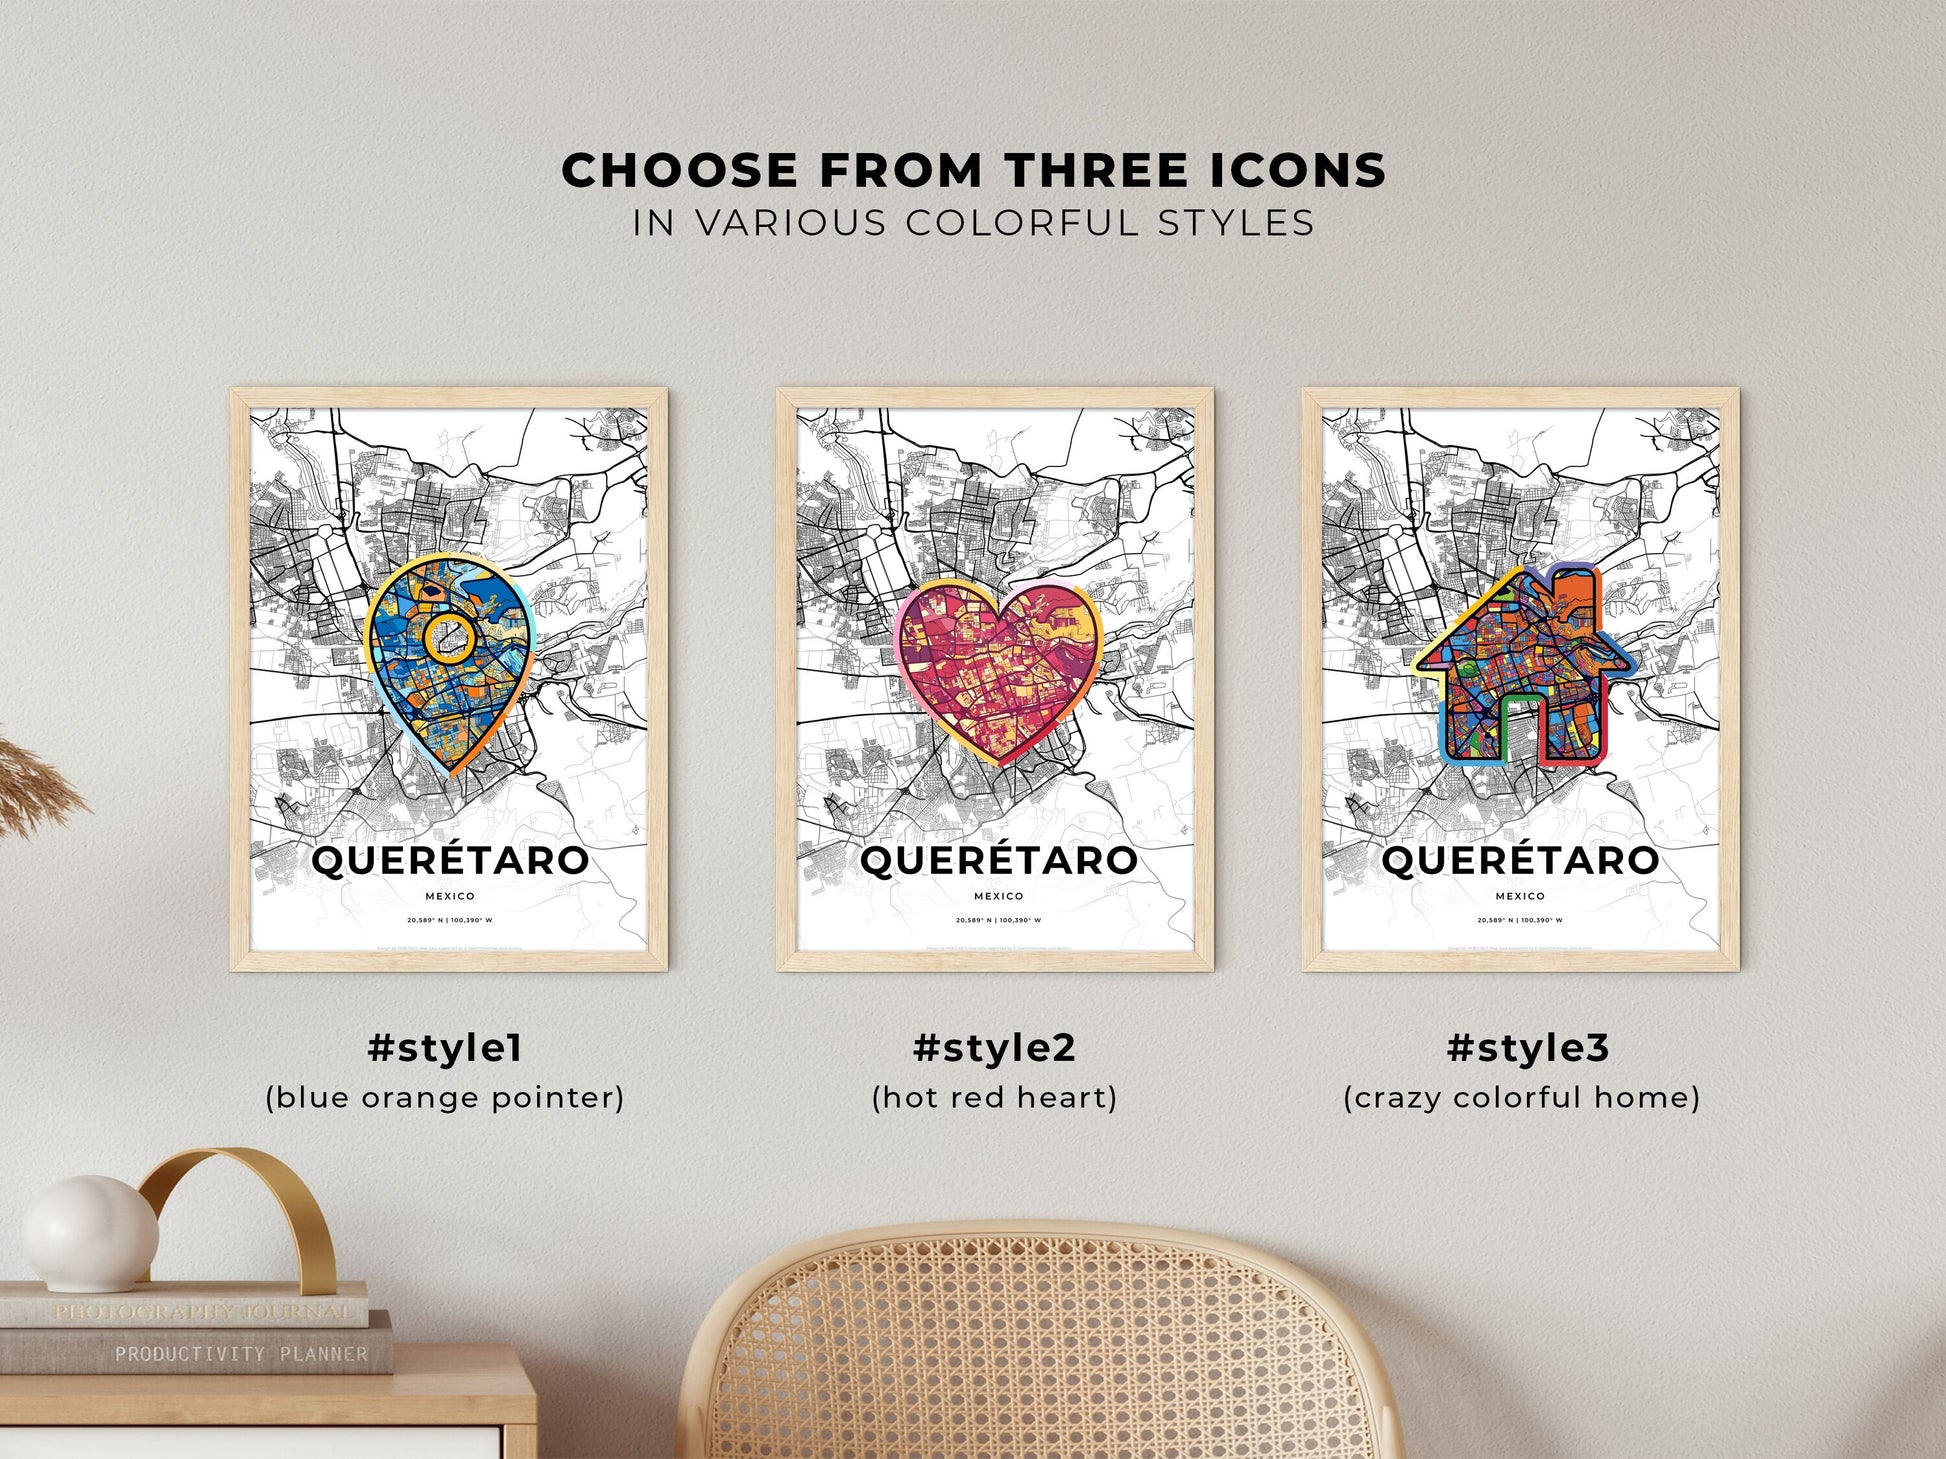 QUERÉTARO MEXICO minimal art map with a colorful icon.